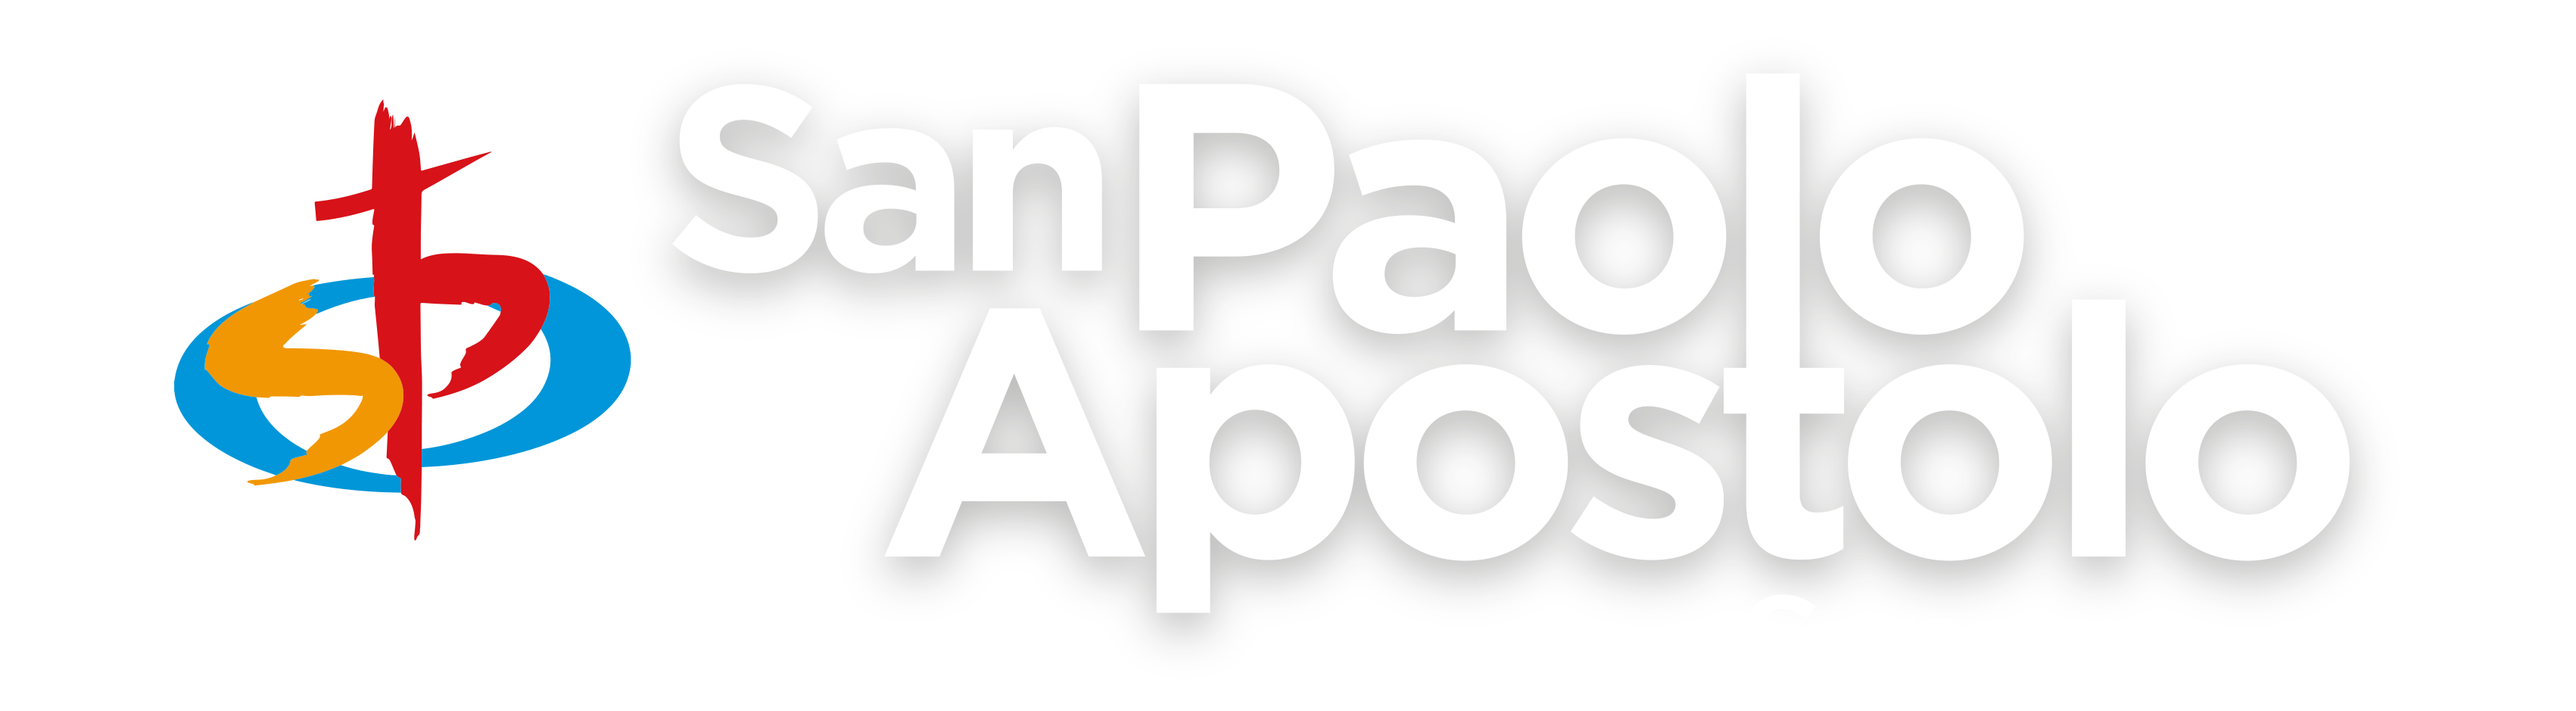 Comunità Pastorale S. Paolo Apostolo Senago